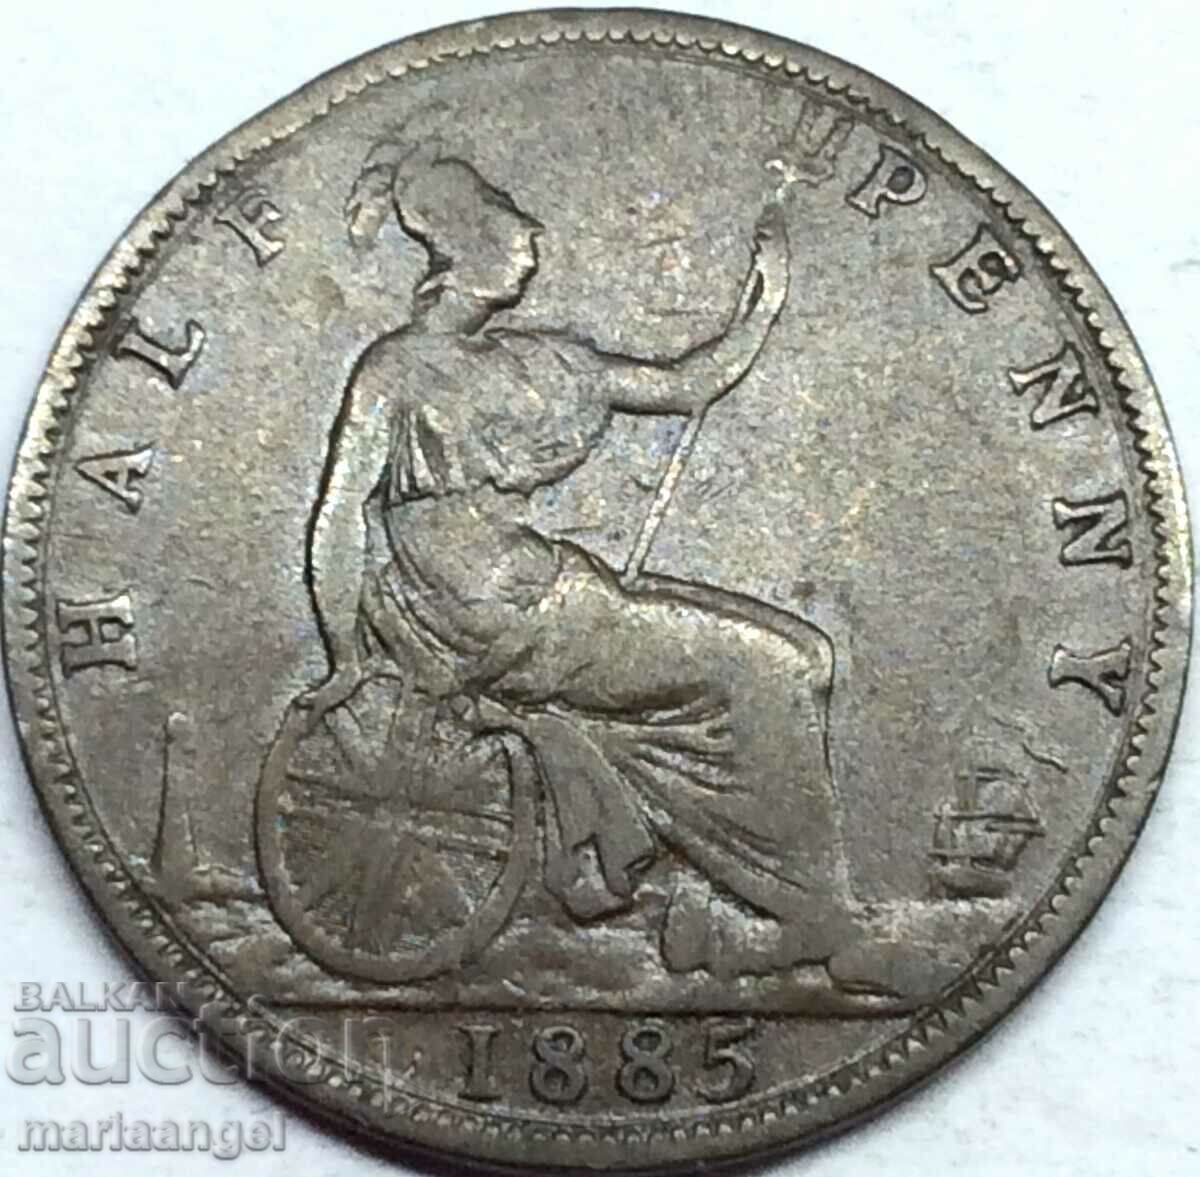 Great Britain 1/2 Penny 1885 Victoria Bronze